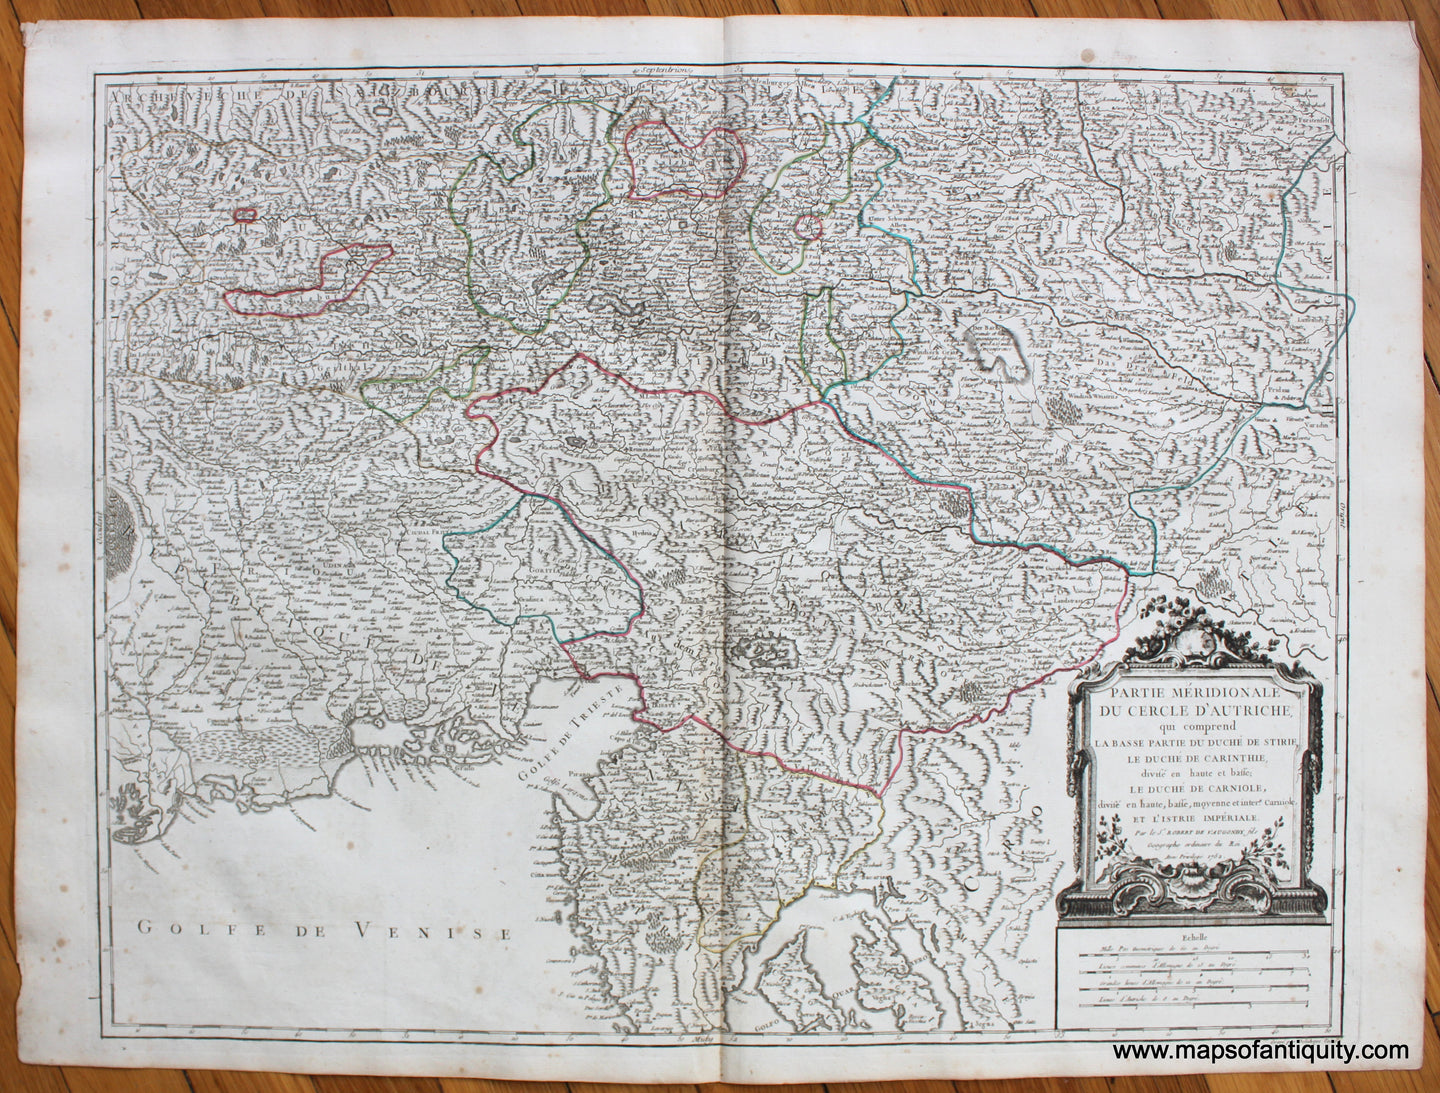 Antique-Map-Partie-Meridionale-Du-Cercle-D'Autriche-Austria-Robert-de-Vaugondy-1750-France-French-1750s-1700s-Mid-18th-Century-Maps-of-Antiquity